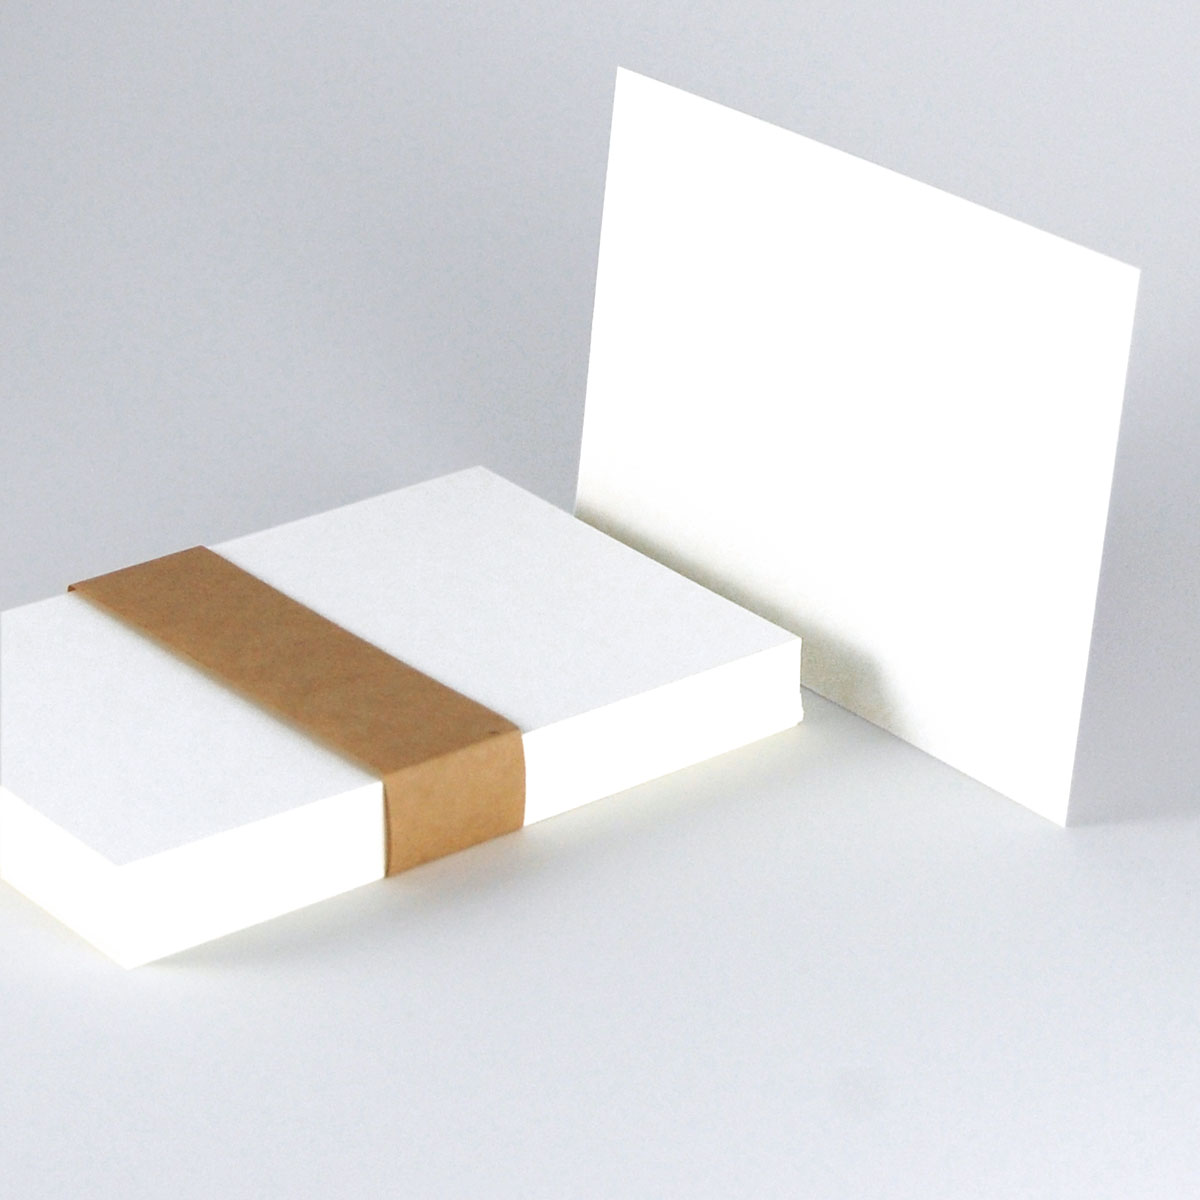 Postkarten 11,5 x 16,5 cm aus weißem Recycling-Karton